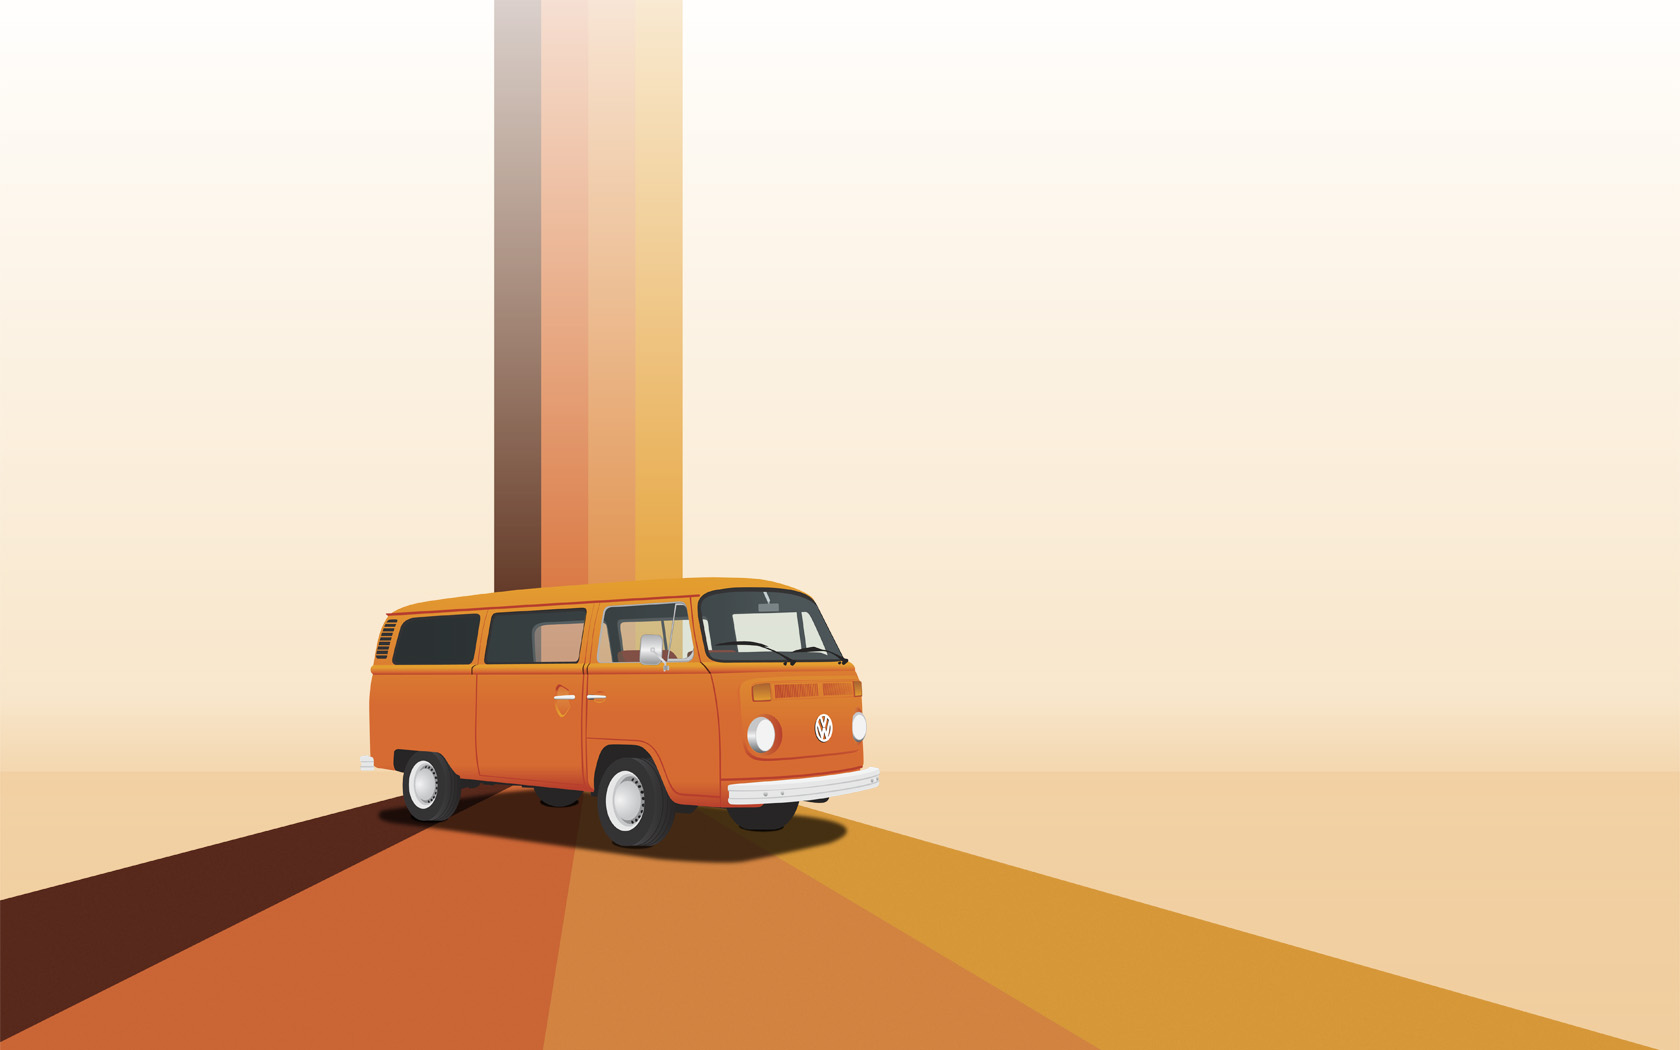 Với thiết kế góc cạnh và cá tính của mình, chiếc xe Volkswagen Bus là biểu tượng của những chuyến phiêu lưu và sự tự do. Hãy xem hình ảnh này để truyền cảm hứng cho cuộc sống của bạn.